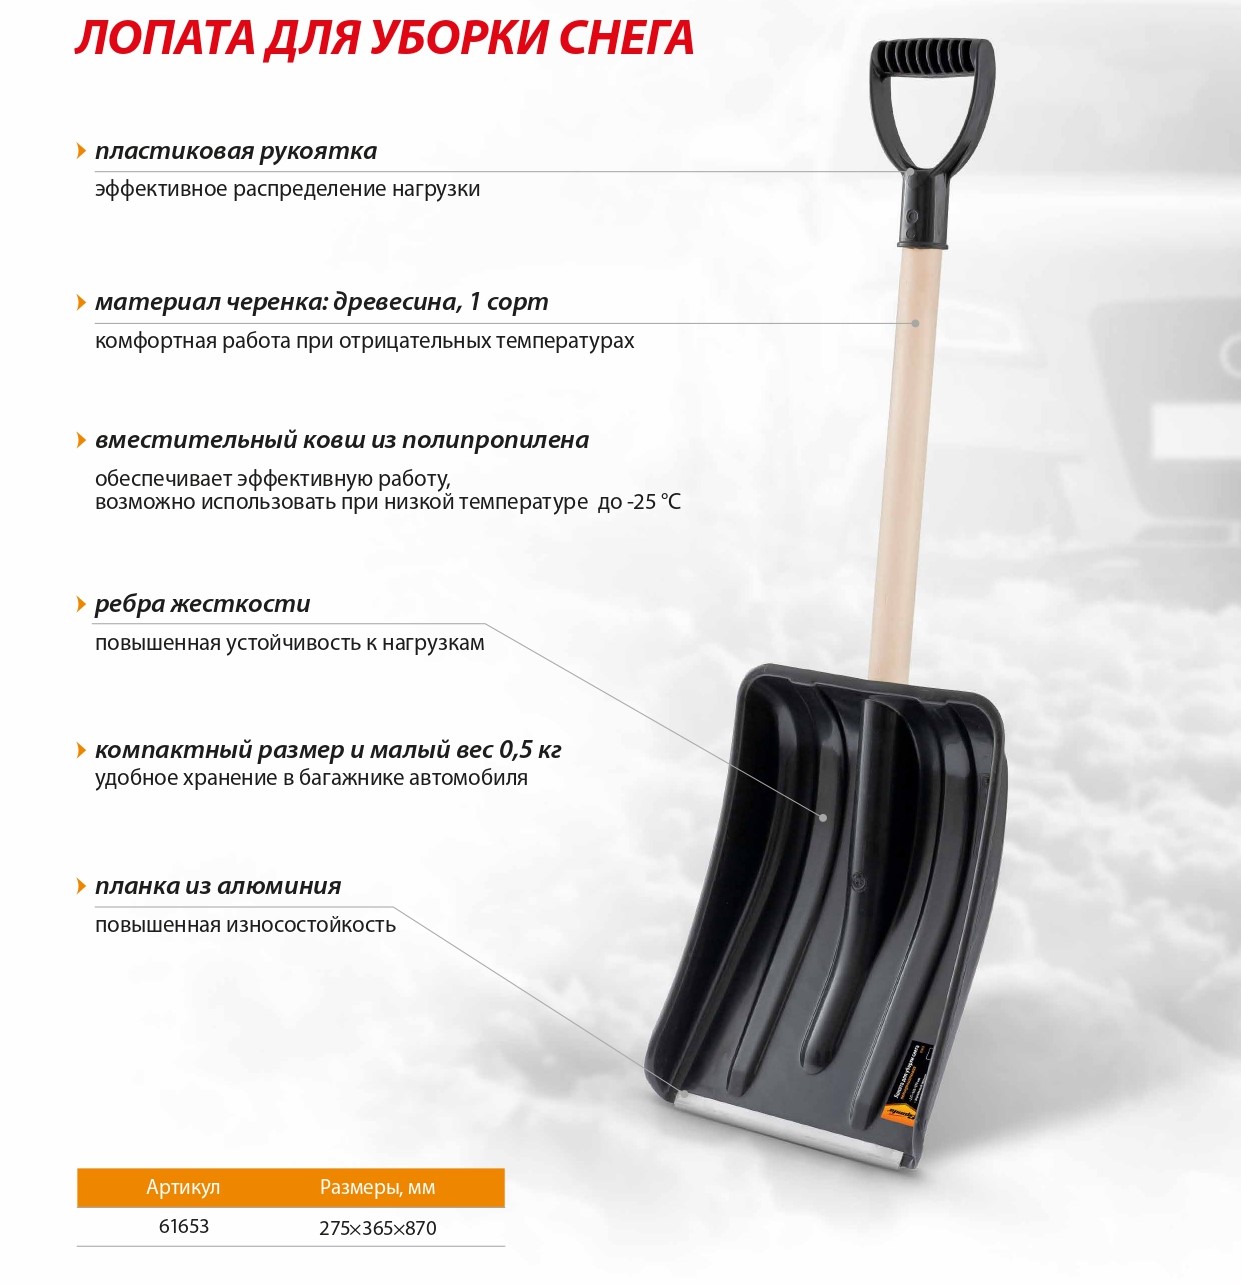 Инструмент для уборки снега | Купить инструмент для уборки снега в Минске, цена в каталоге